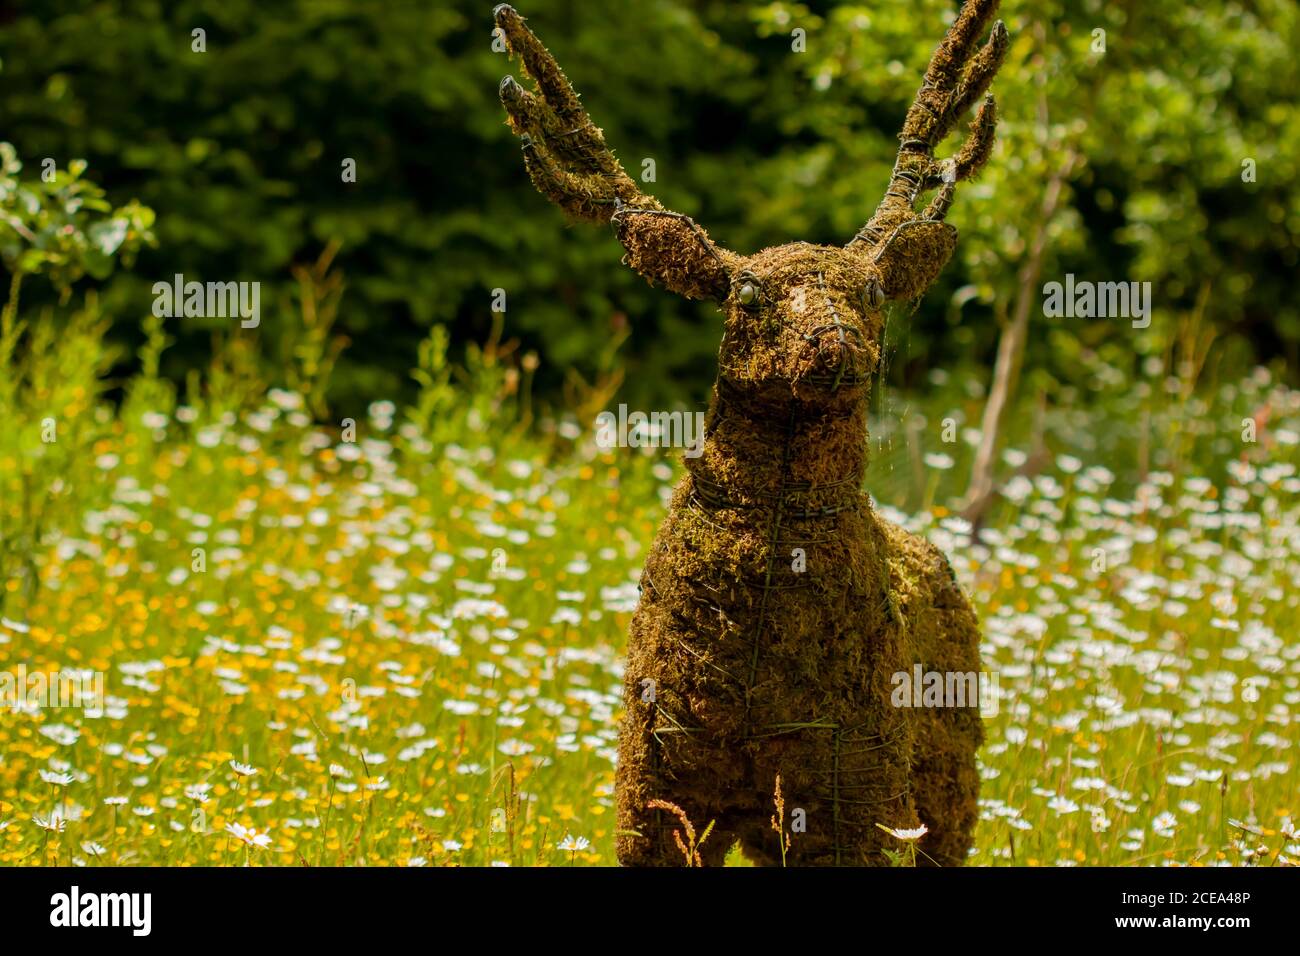 Ein Grasmodell eines Hirsches aus einem Metallrahmen und Füllung innen mit trockenem Gartengras und Stroh. Dieses realistische Modell wird unter Wildblumen als gesetzt Stockfoto